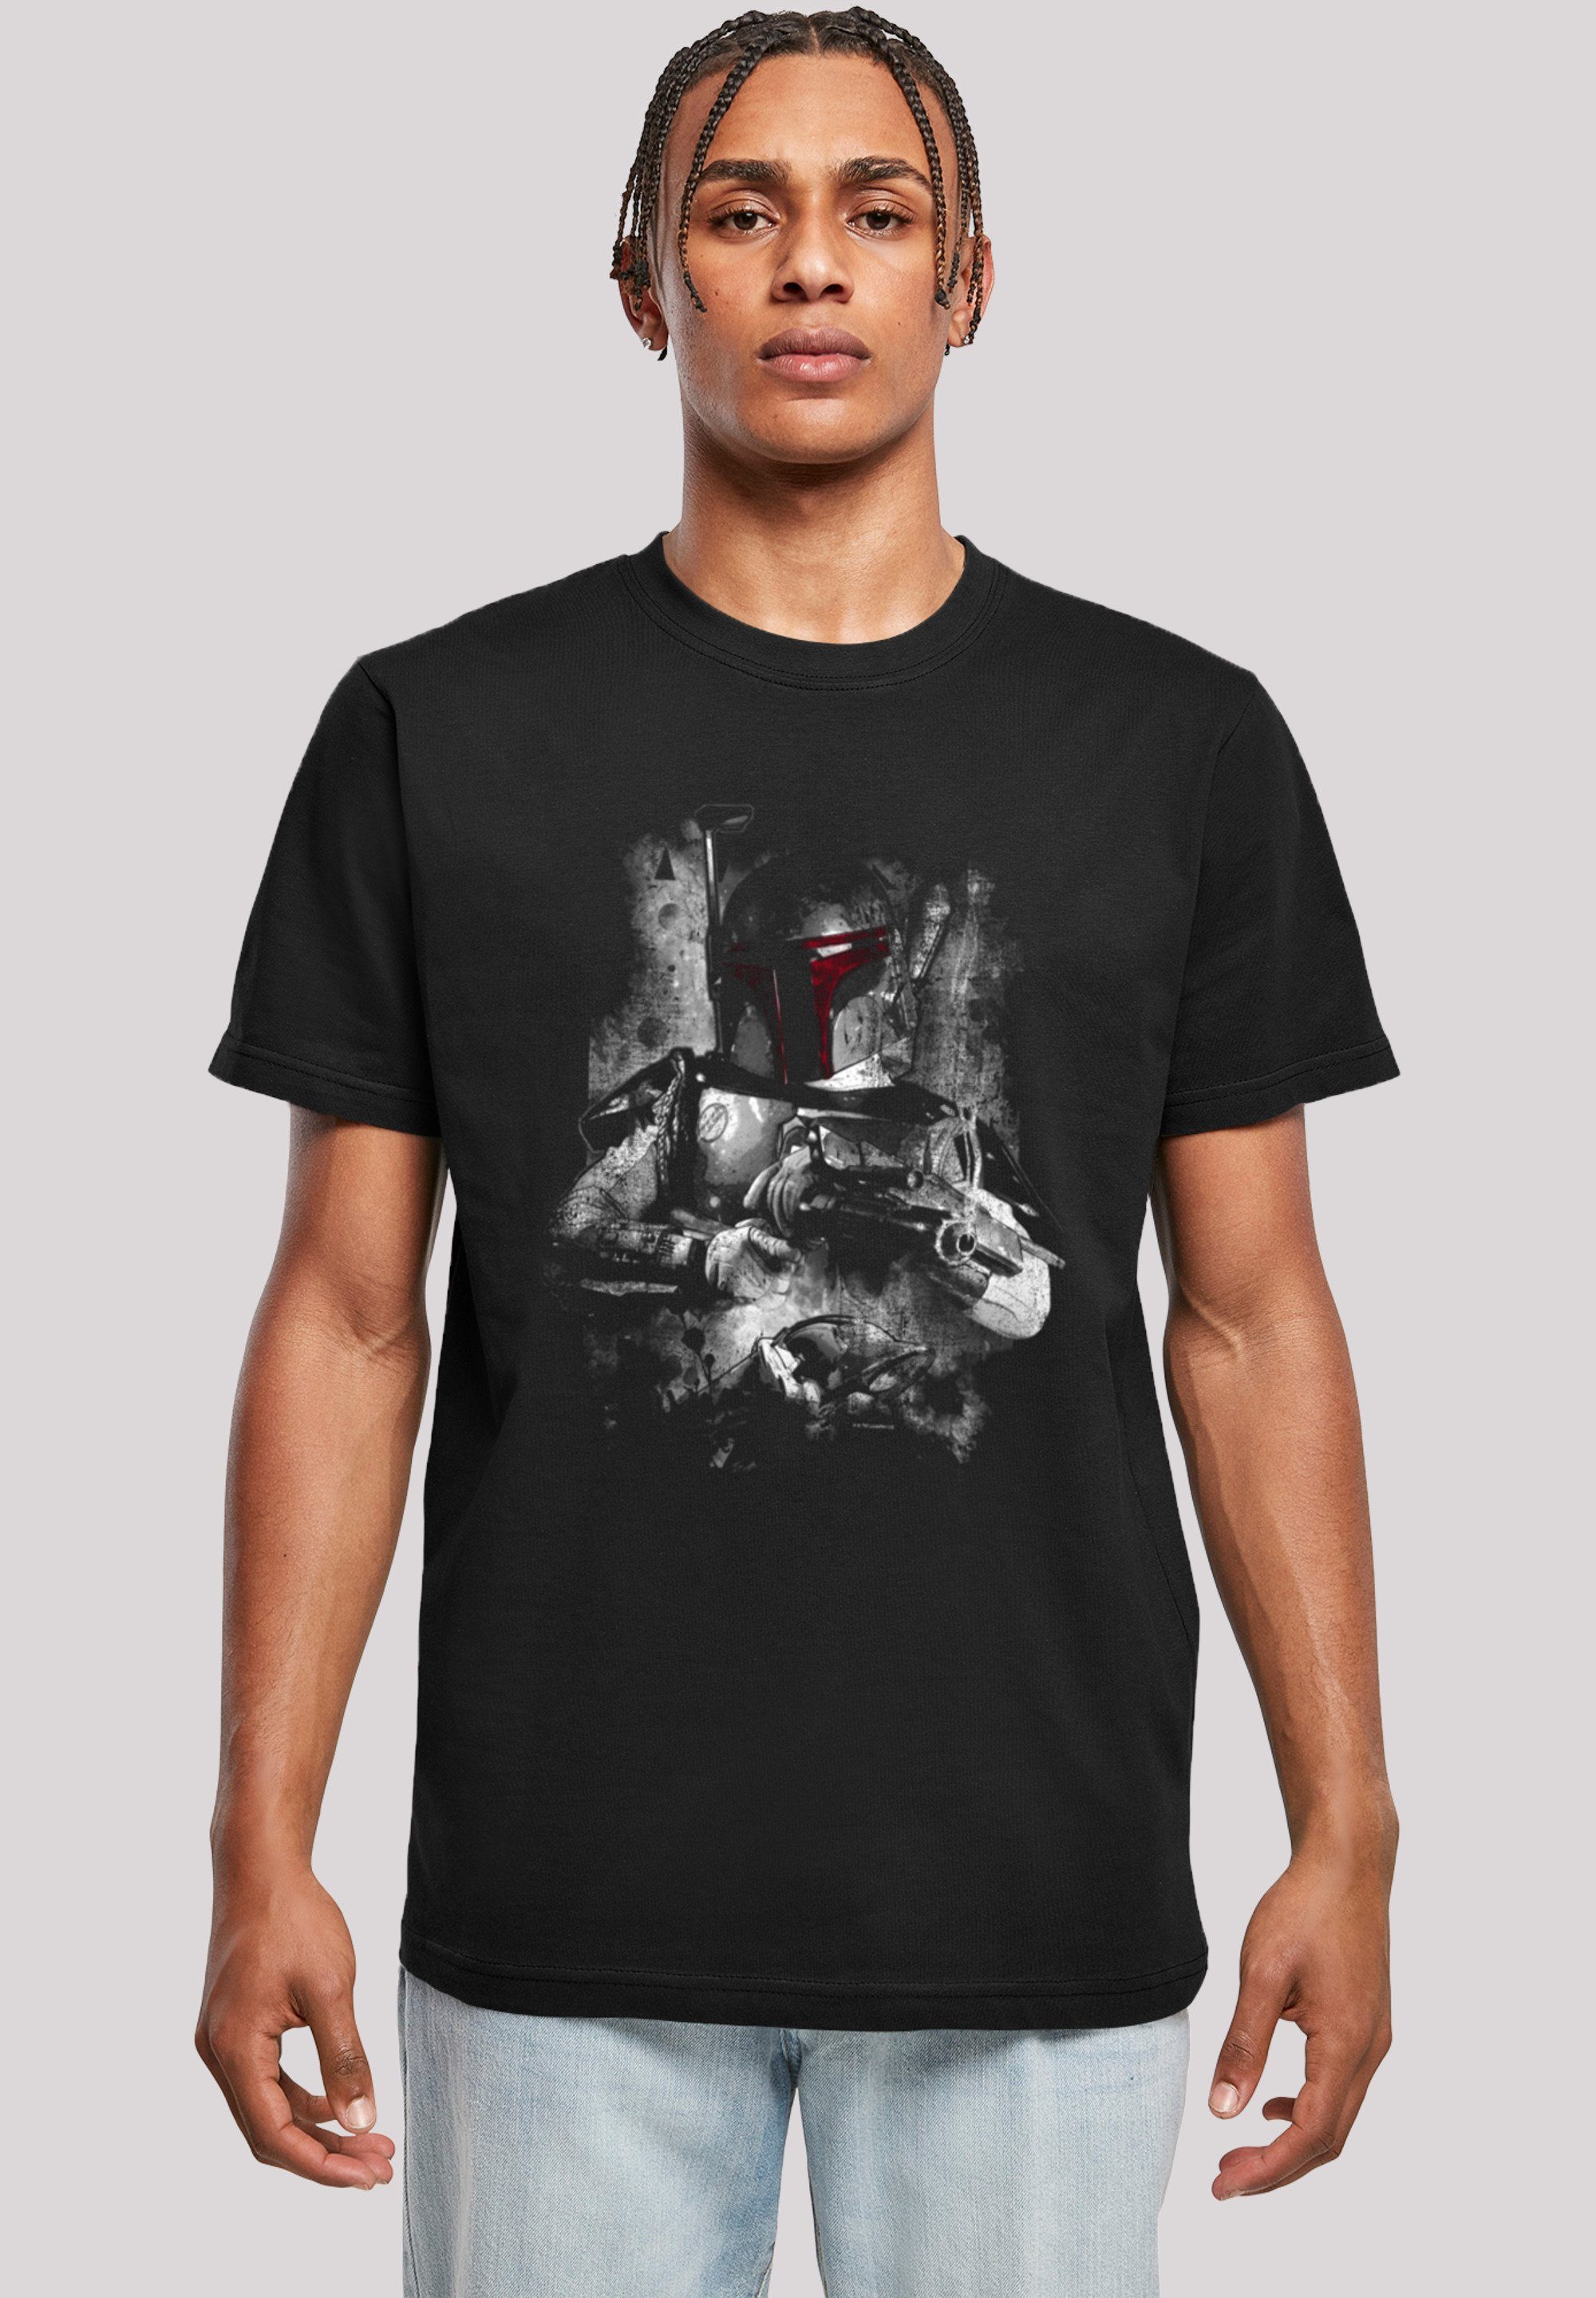 F4NT4STIC T-Shirt Star Wars Distressed Fett Print Boba